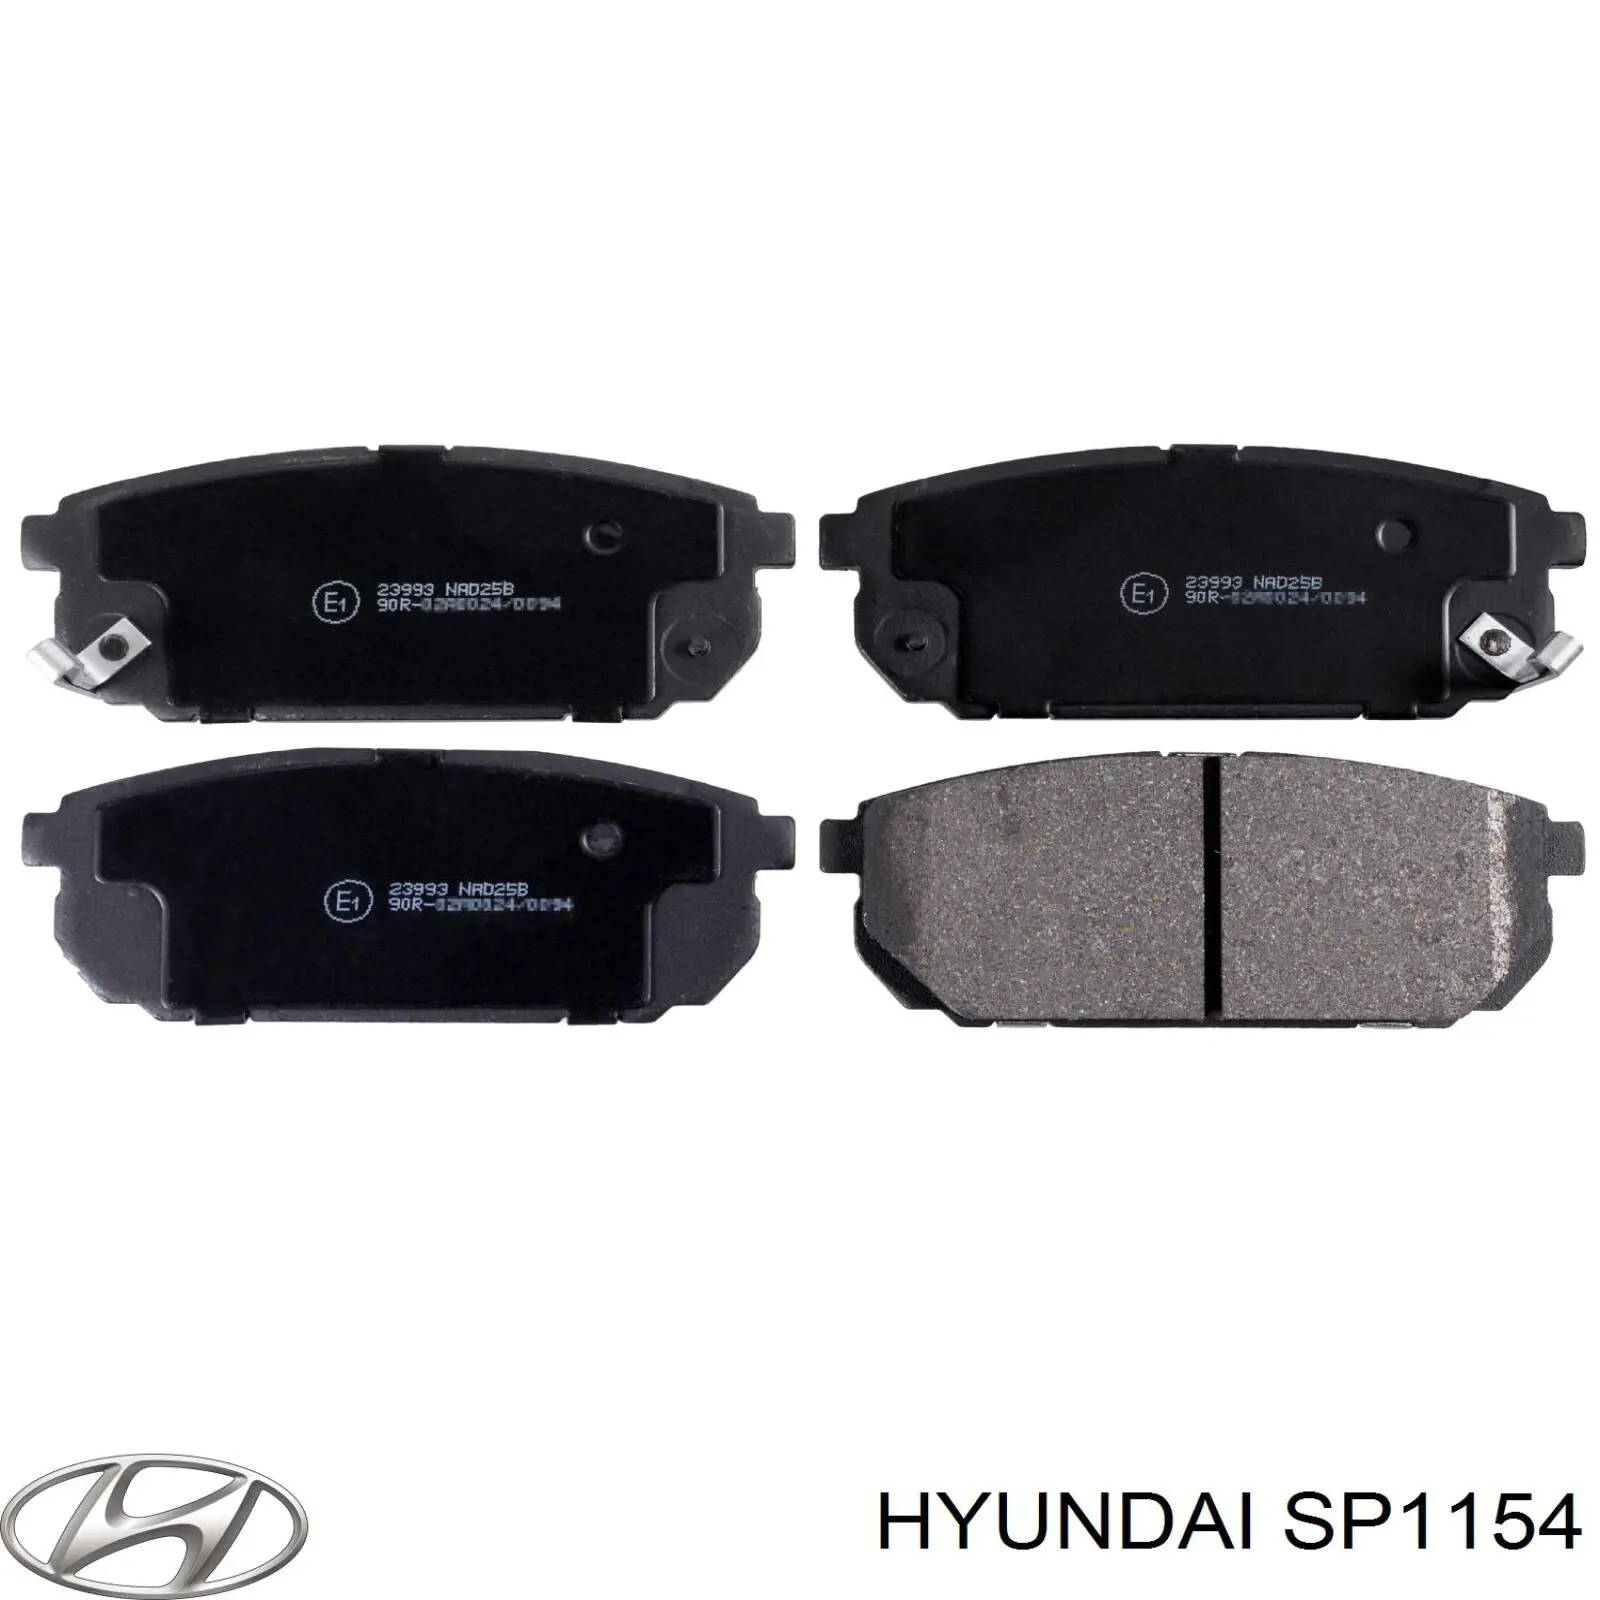 SP1154 Hyundai/Kia pastillas de freno traseras